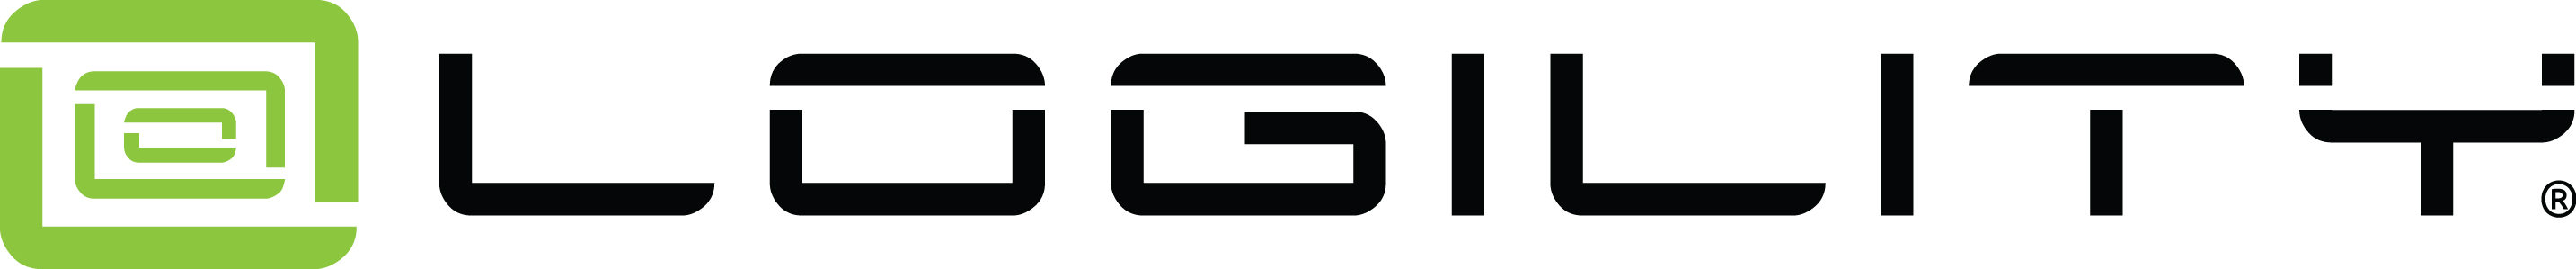 Logility Company Logo